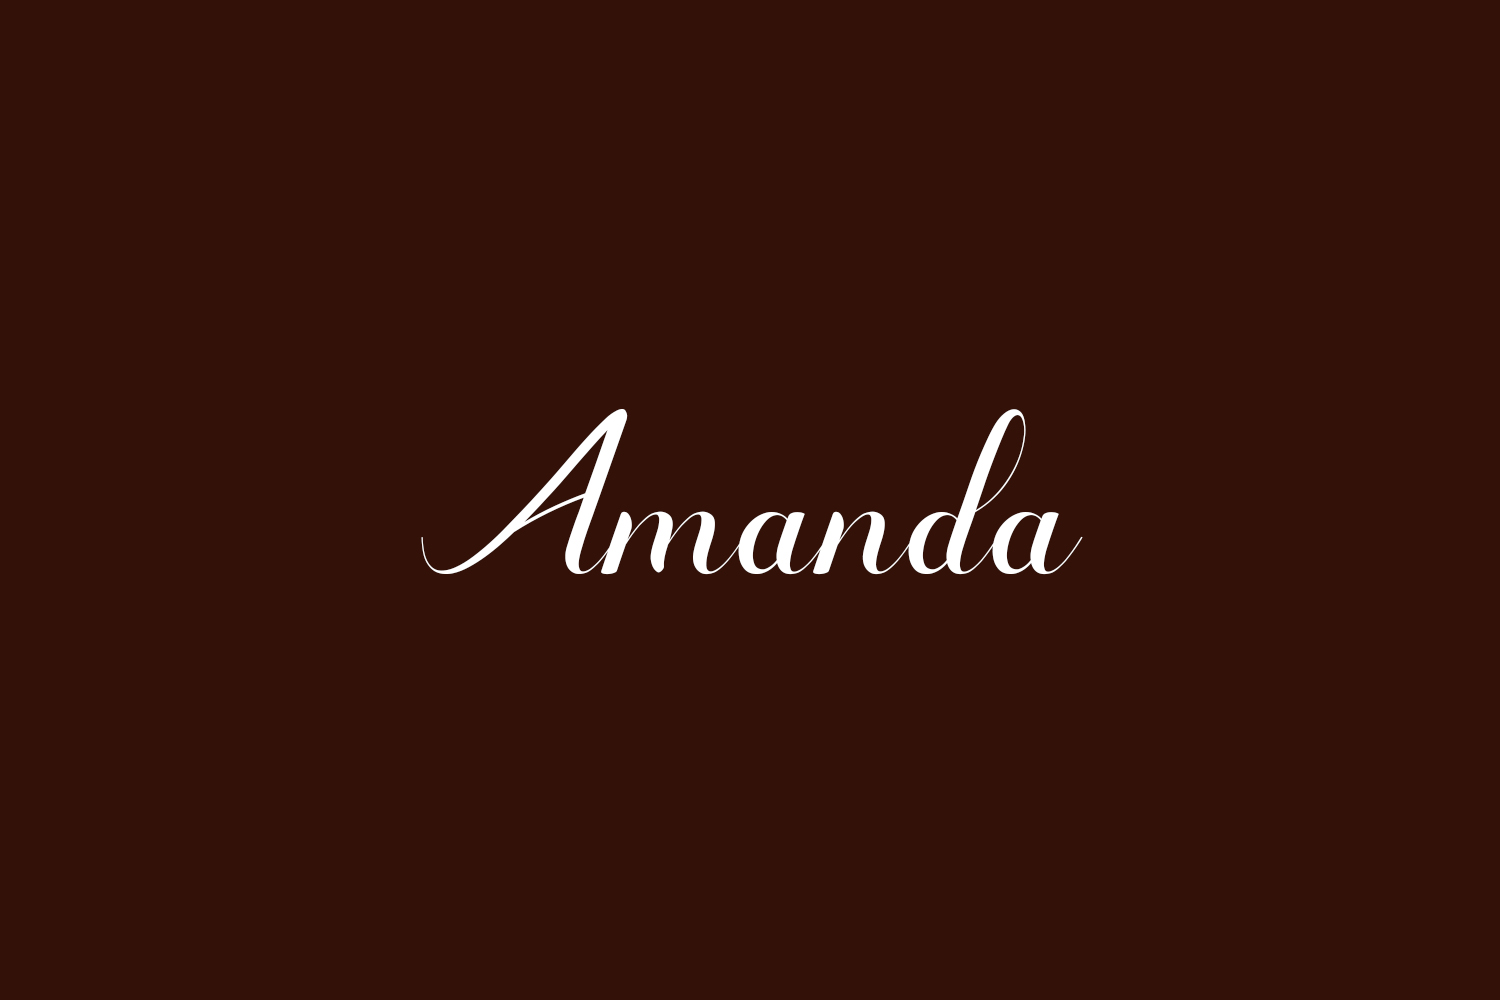 Amanda Free Font